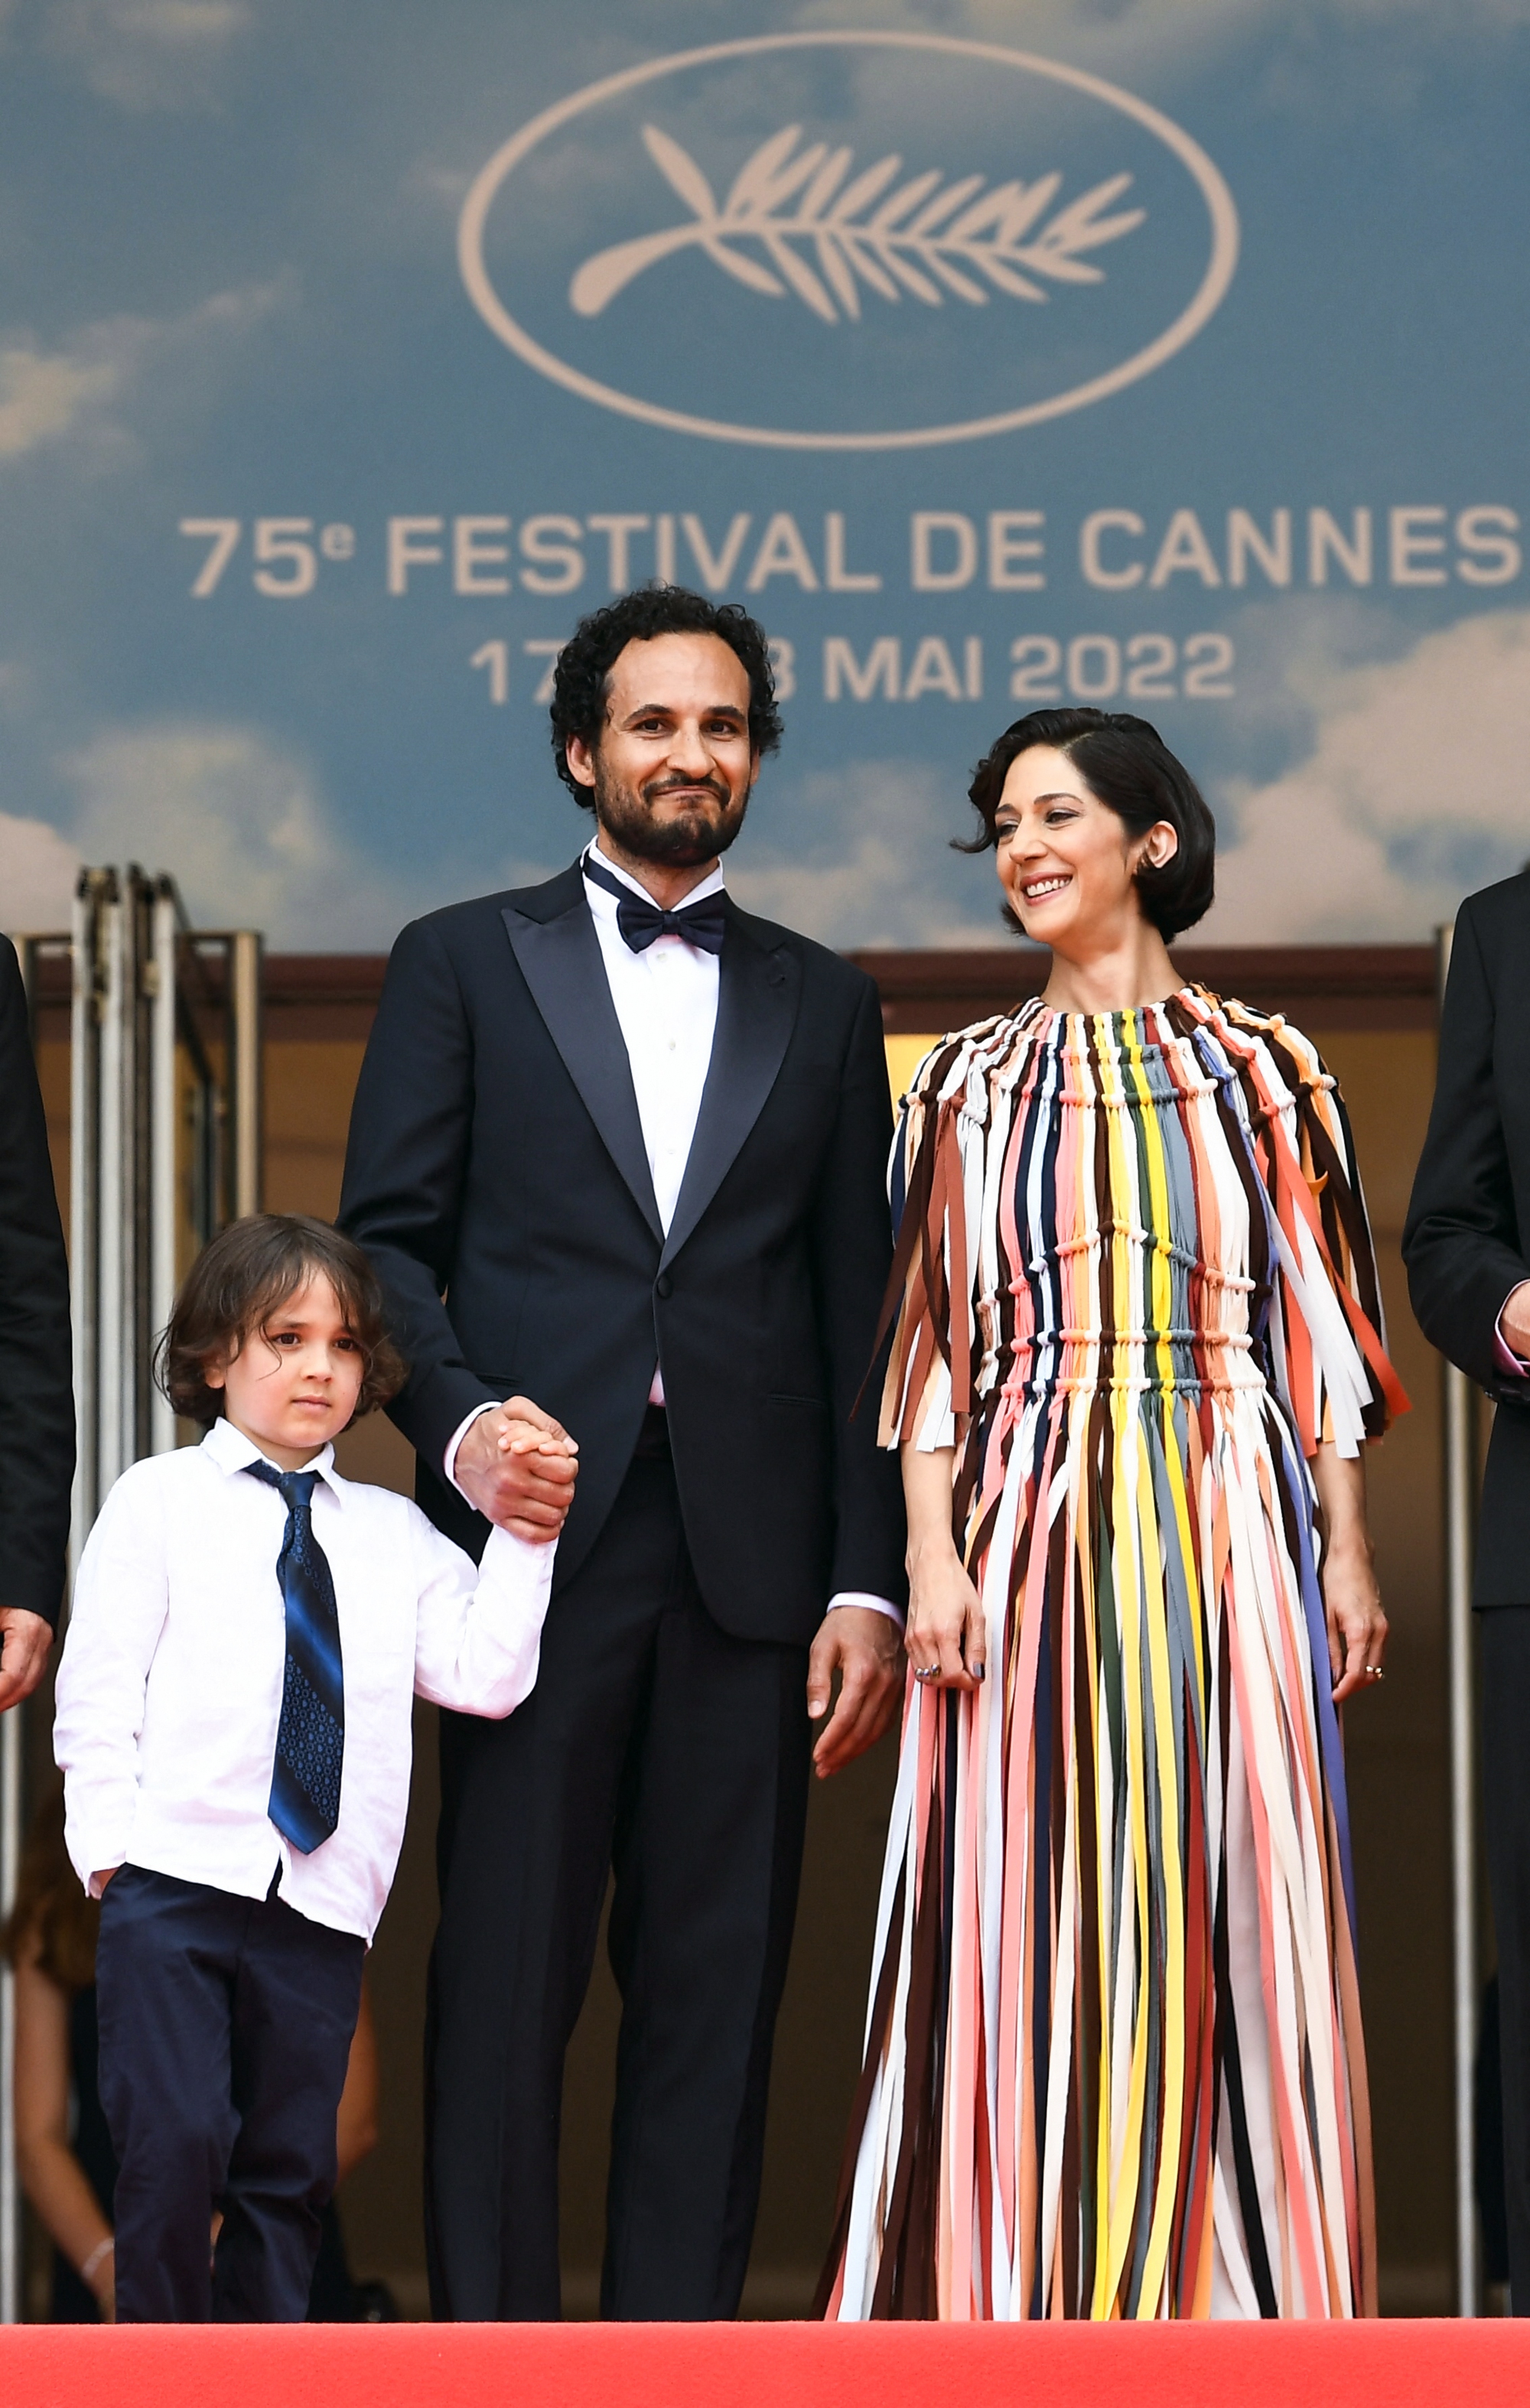 Cận cảnh “hớ hênh” trên thảm đỏ Cannes 2022 - Ảnh 12.